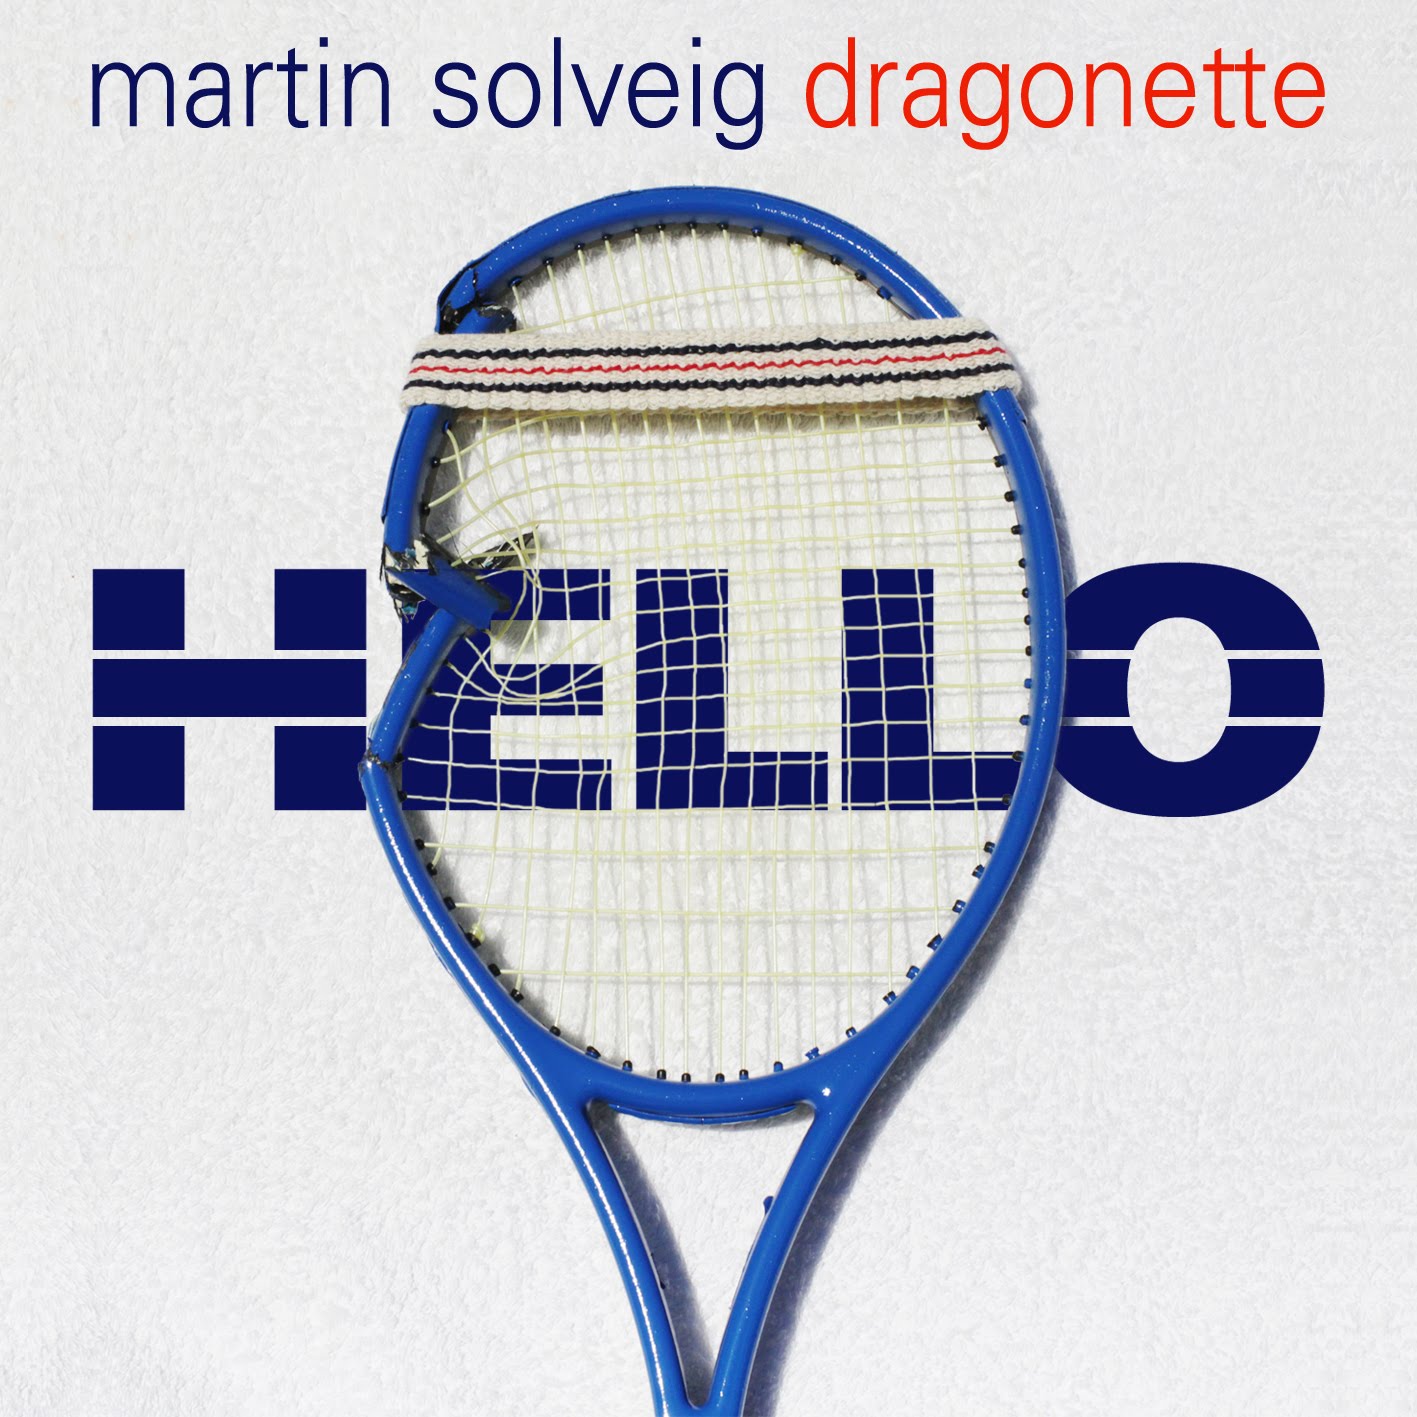 Hello Martin Solveig